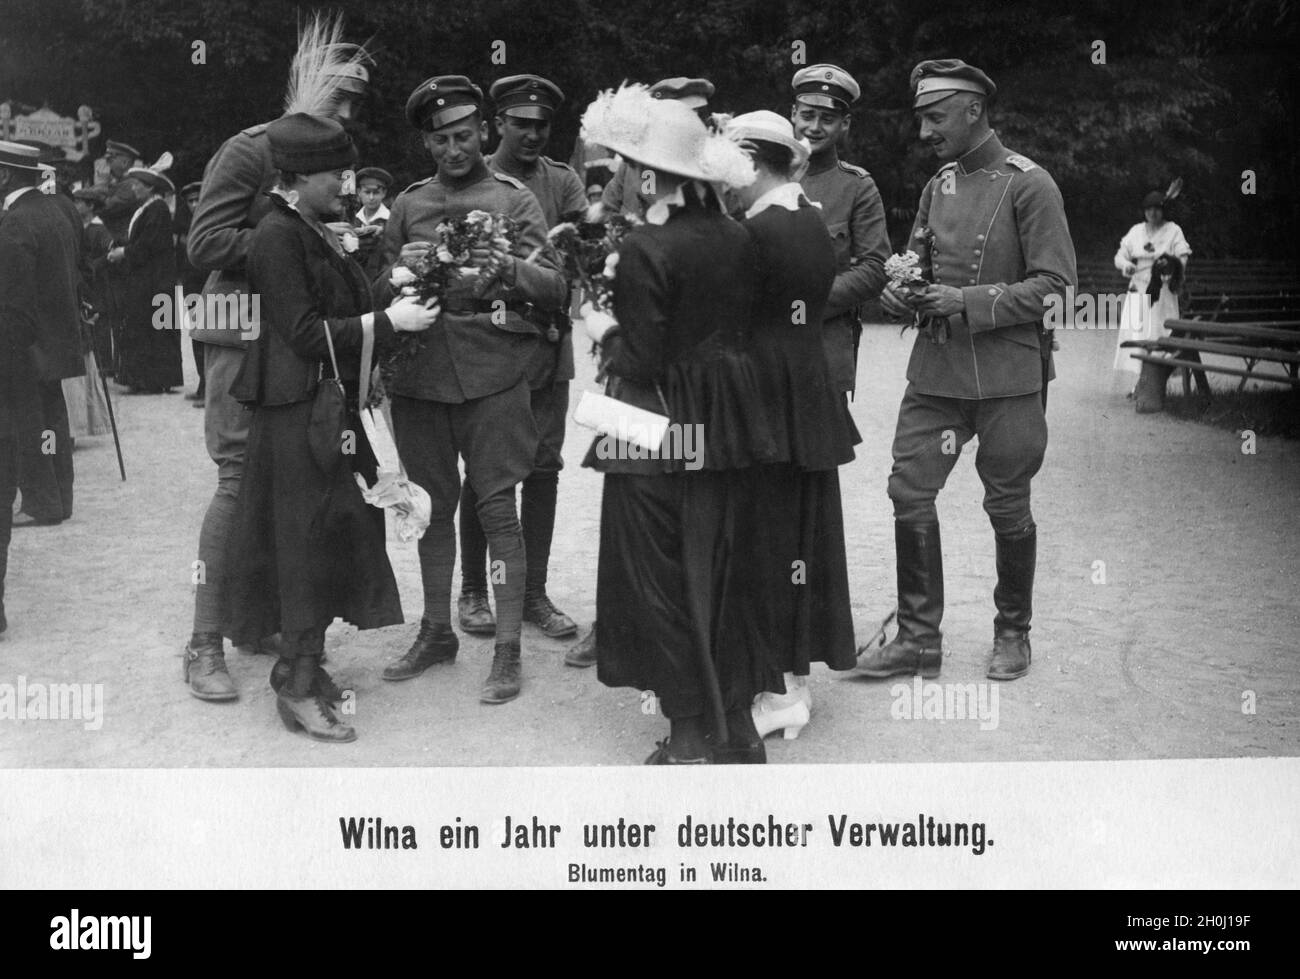 Blumentag im deutsch besetzten Vilnius: Junge Frauen reichen Blumensträuße an eine Gruppe deutscher Offiziere. [Automatisierte Übersetzung] Stockfoto